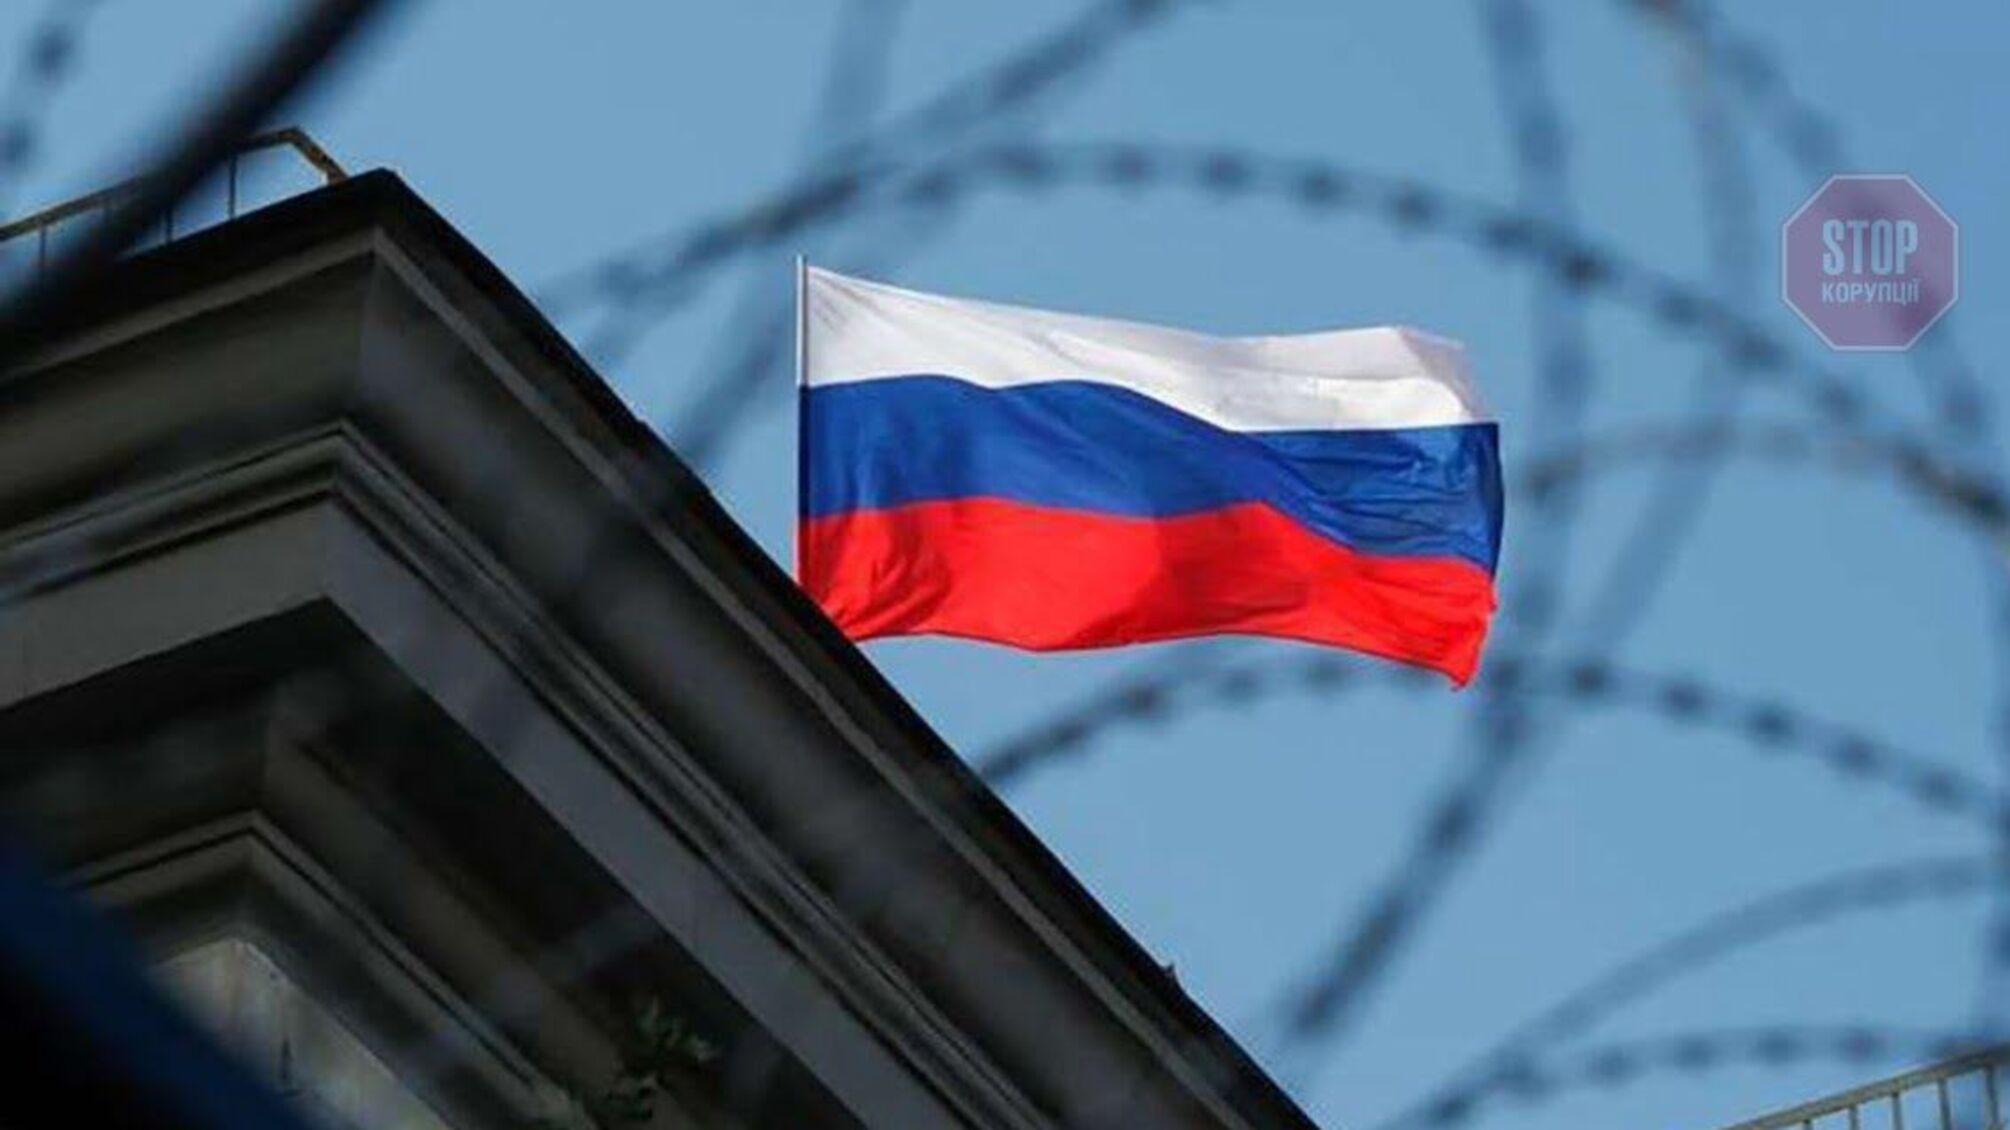 'Цена будет дорогой': в ЕС заявили о готовности санкций против России